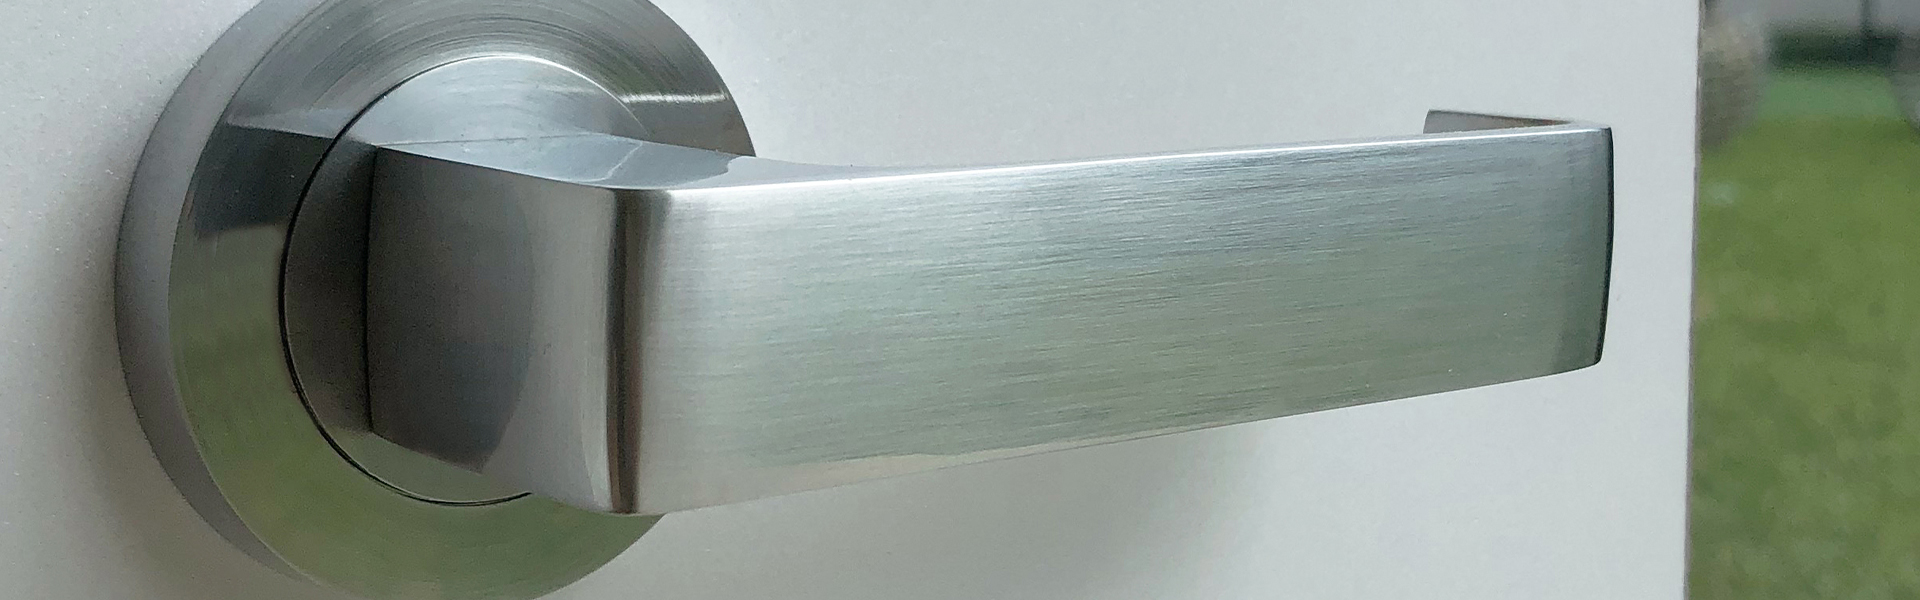 Photo of a door handle